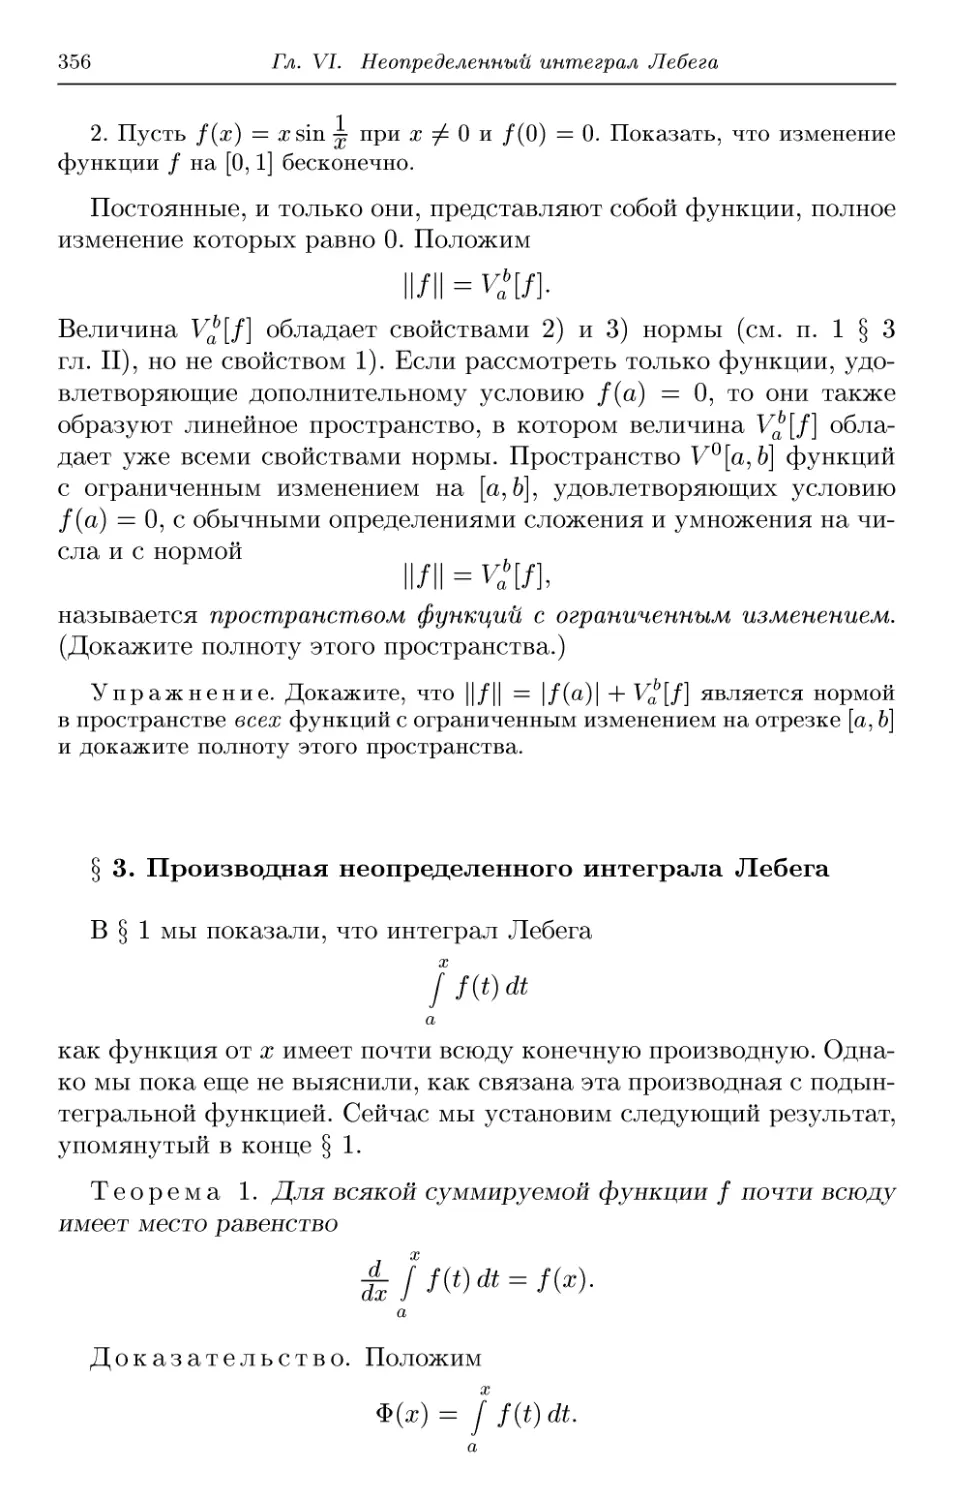 § 3. Производная неопределенного интеграла Лебега